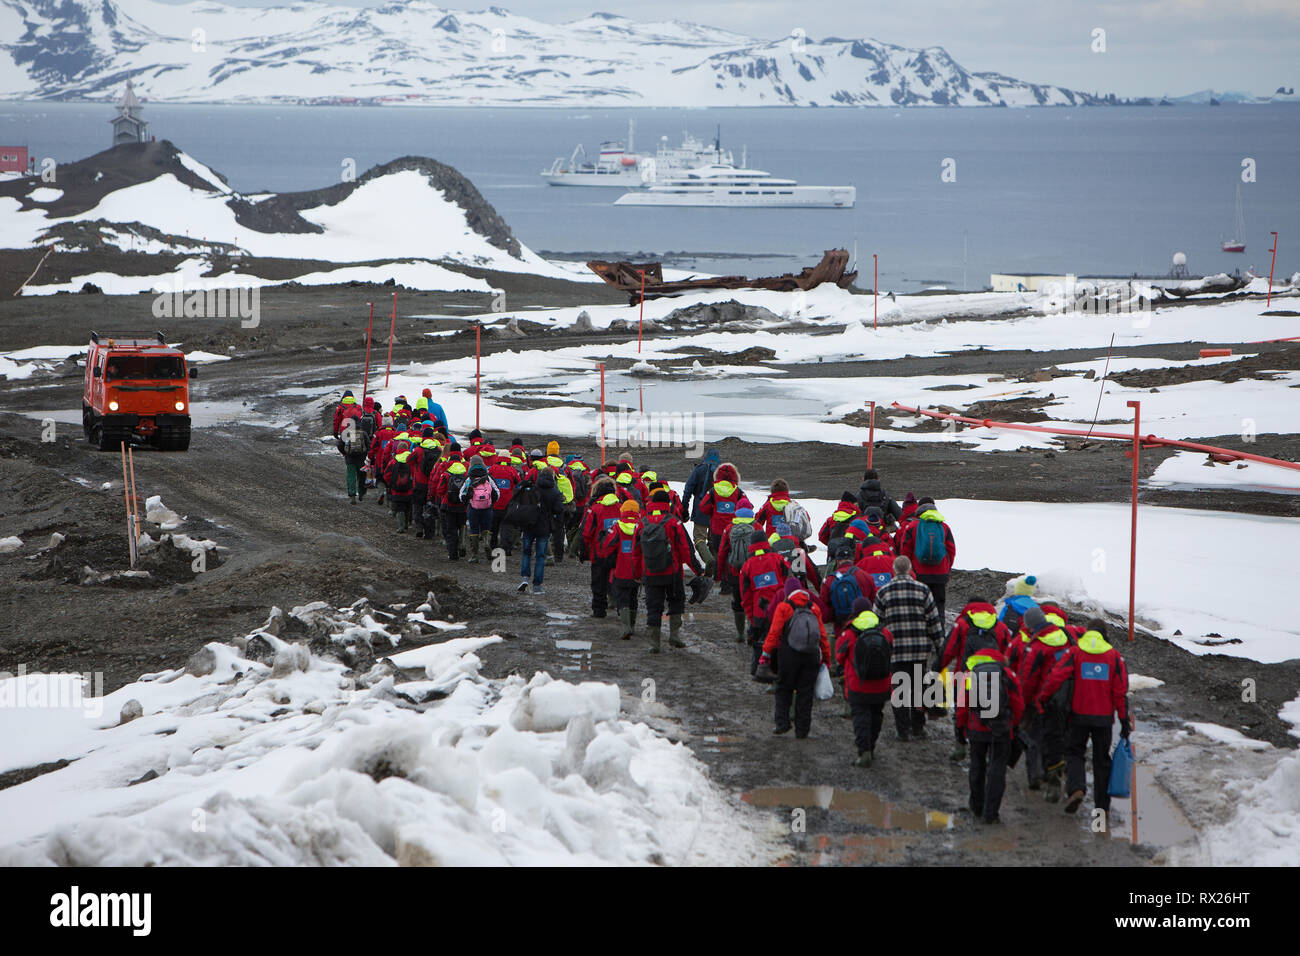 Passeggeri a piedi lungo una strada fangosa per attesa di nave da crociera nave fuori del re George isola, a sud le isole Shetland, Penisola Antartica, Antartide Foto Stock